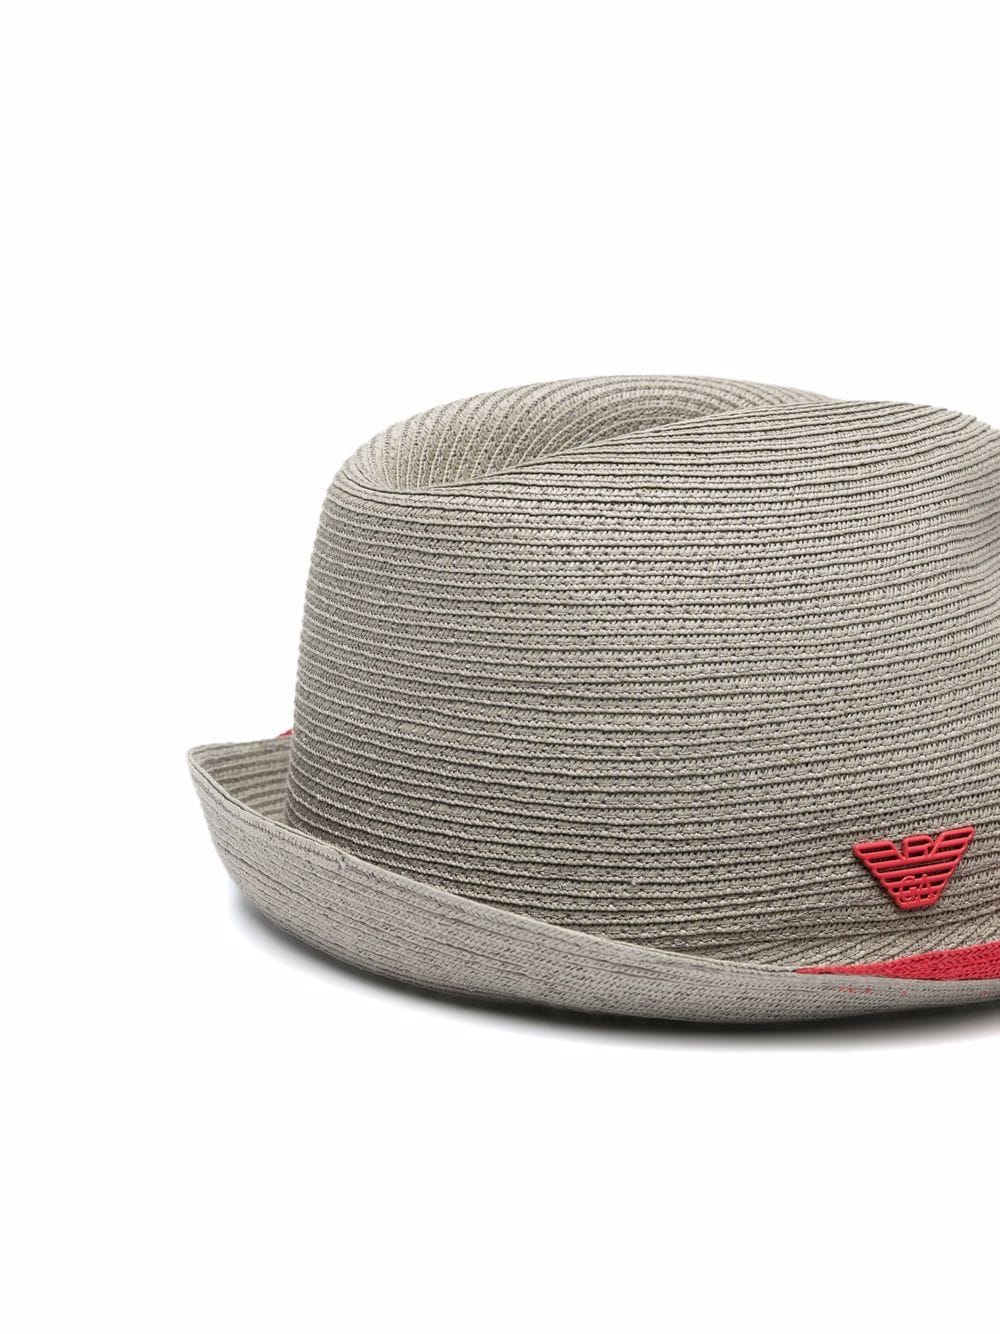 фото Emporio armani шляпа с логотипом